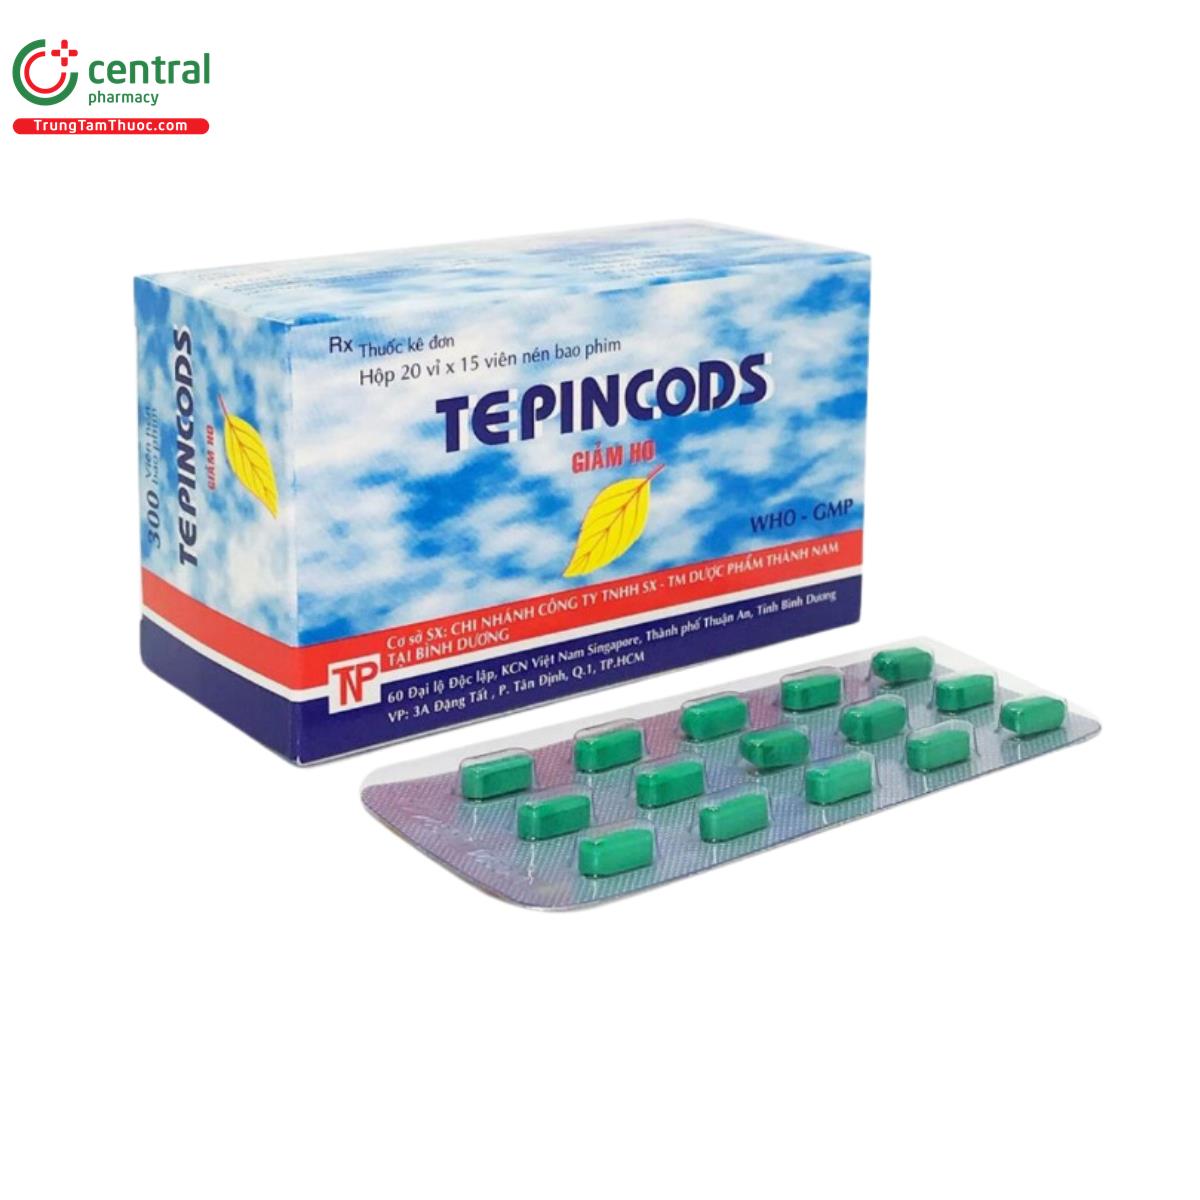 tepincods 2 N5424